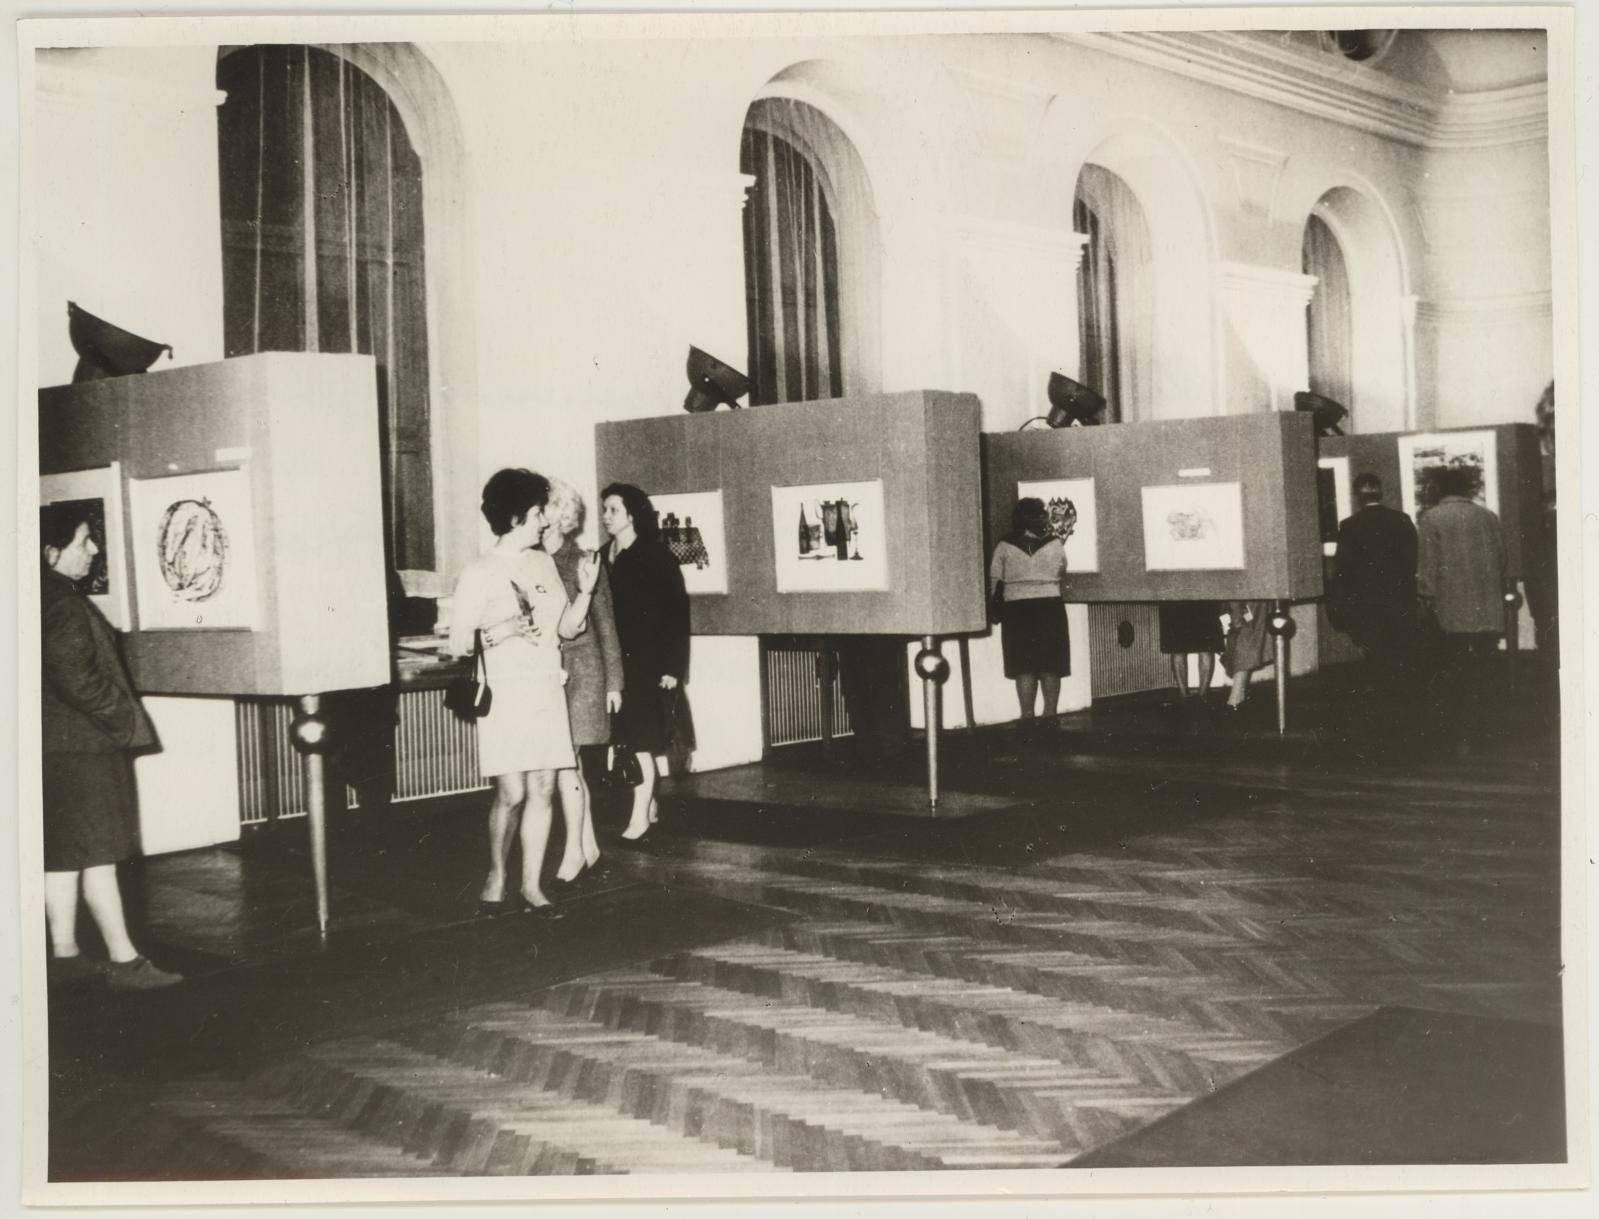 Eesti nõukogude graafika näituse avamine Brno Töölisliikumise Muuseumis 17.11.1969. Vaade näitusele.